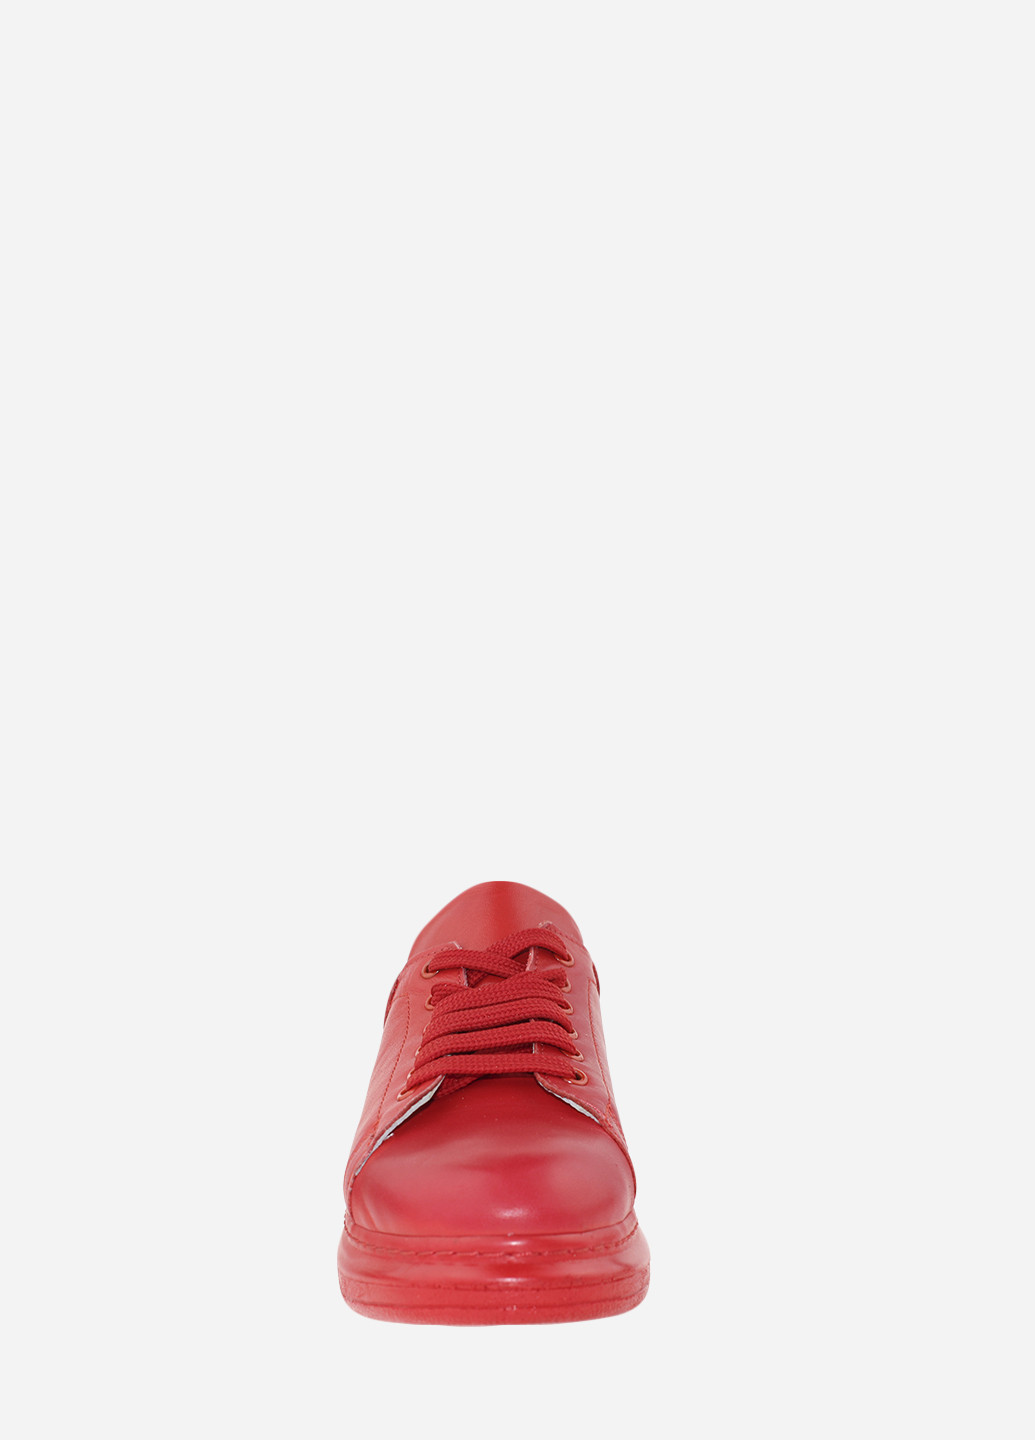 Красные демисезонные кроссовки re377-920 красный Evromoda